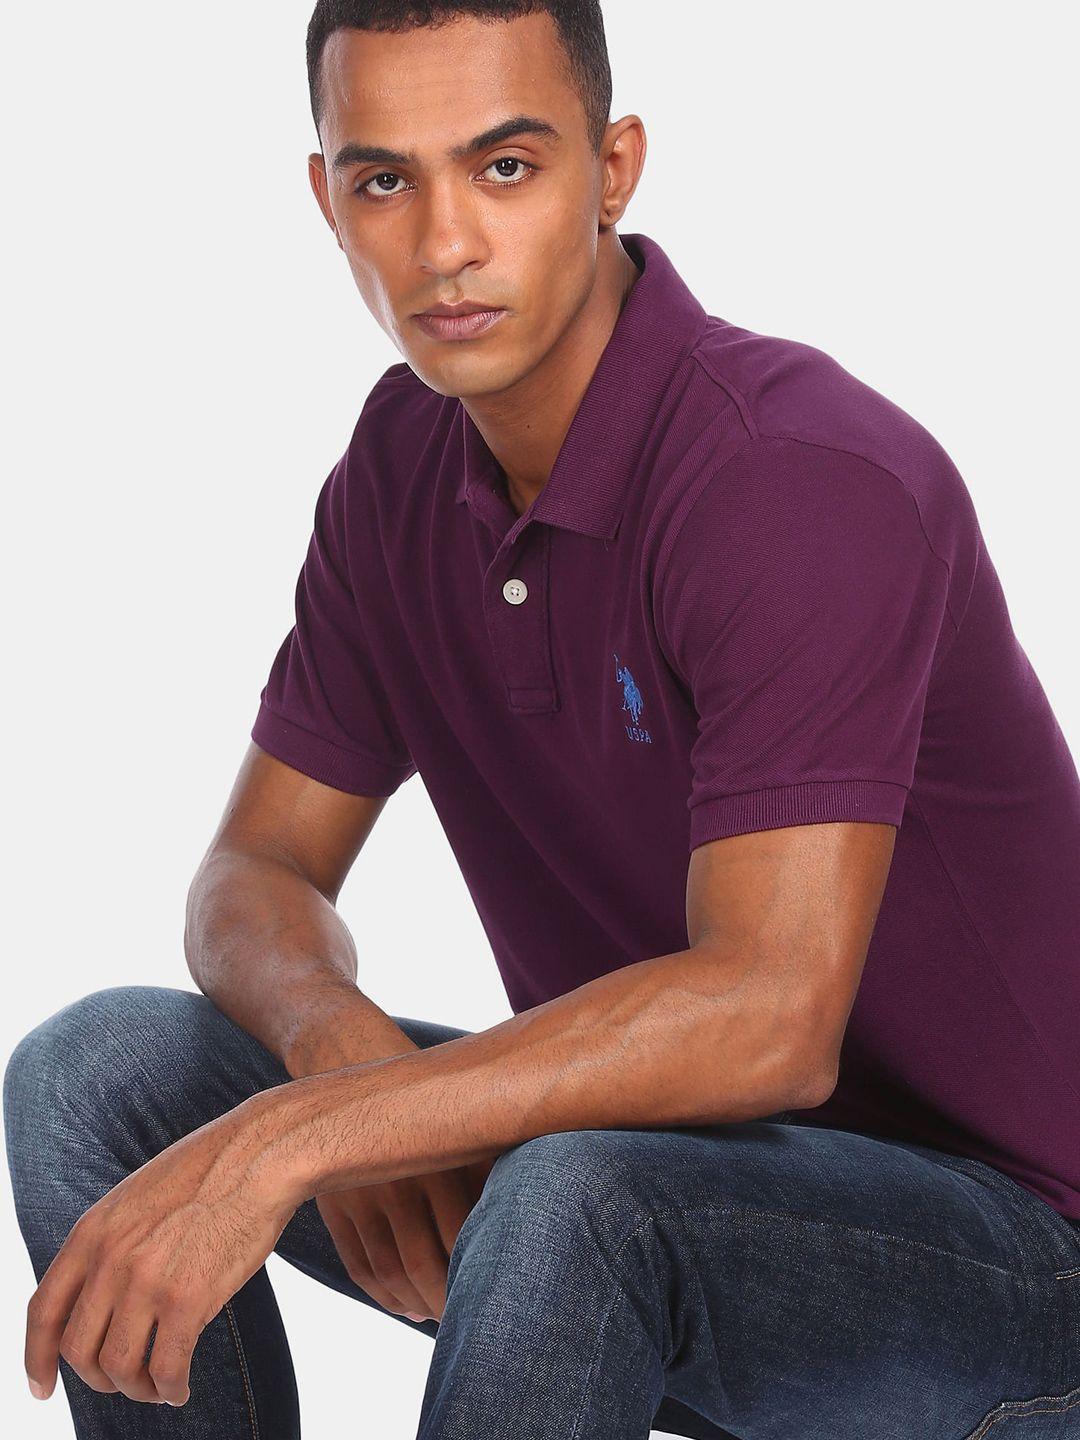 u.s. polo assn. men purple polo collar pure cotton t-shirt